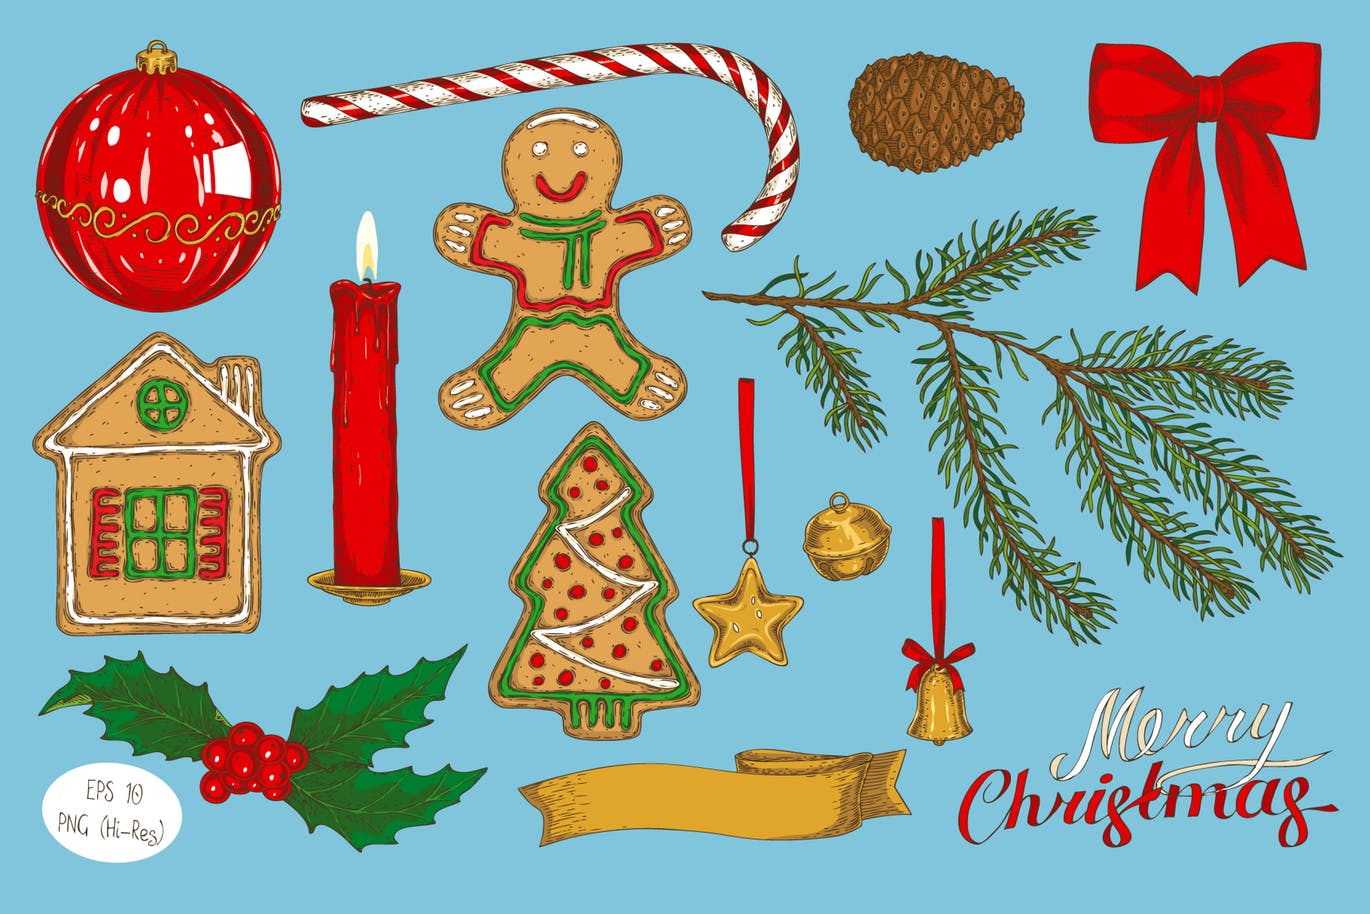 创意圣诞节主题设计矢量图案素材包 Merry Christmas Design Set插图(1)